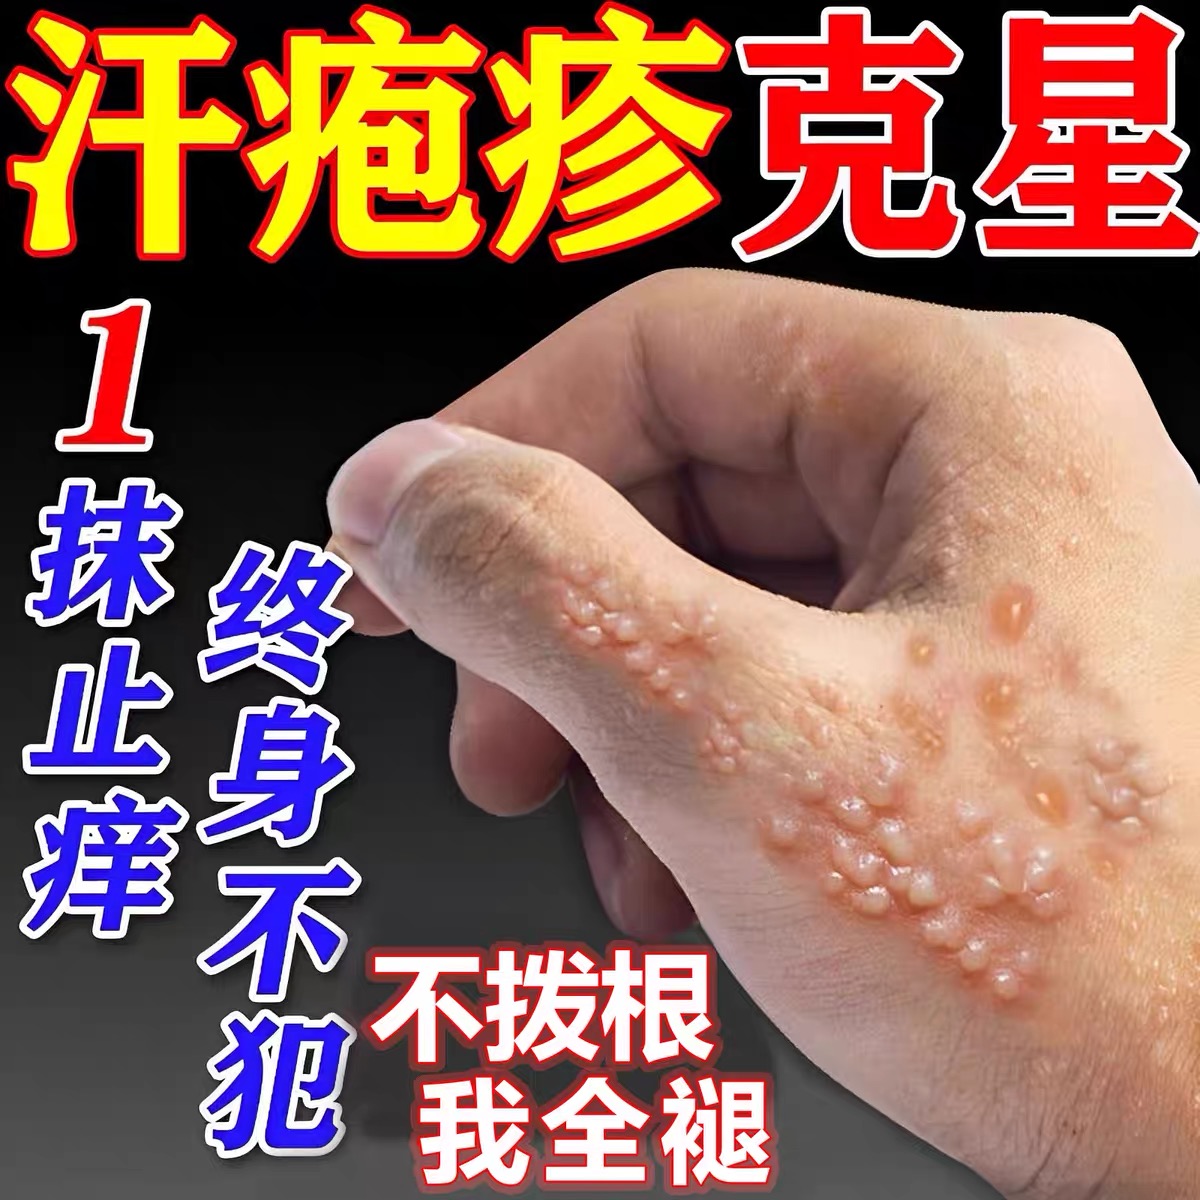 汗状疱疹专用软膏嘴唇疱疹脚疱疹手上起小水泡汗状疱疹